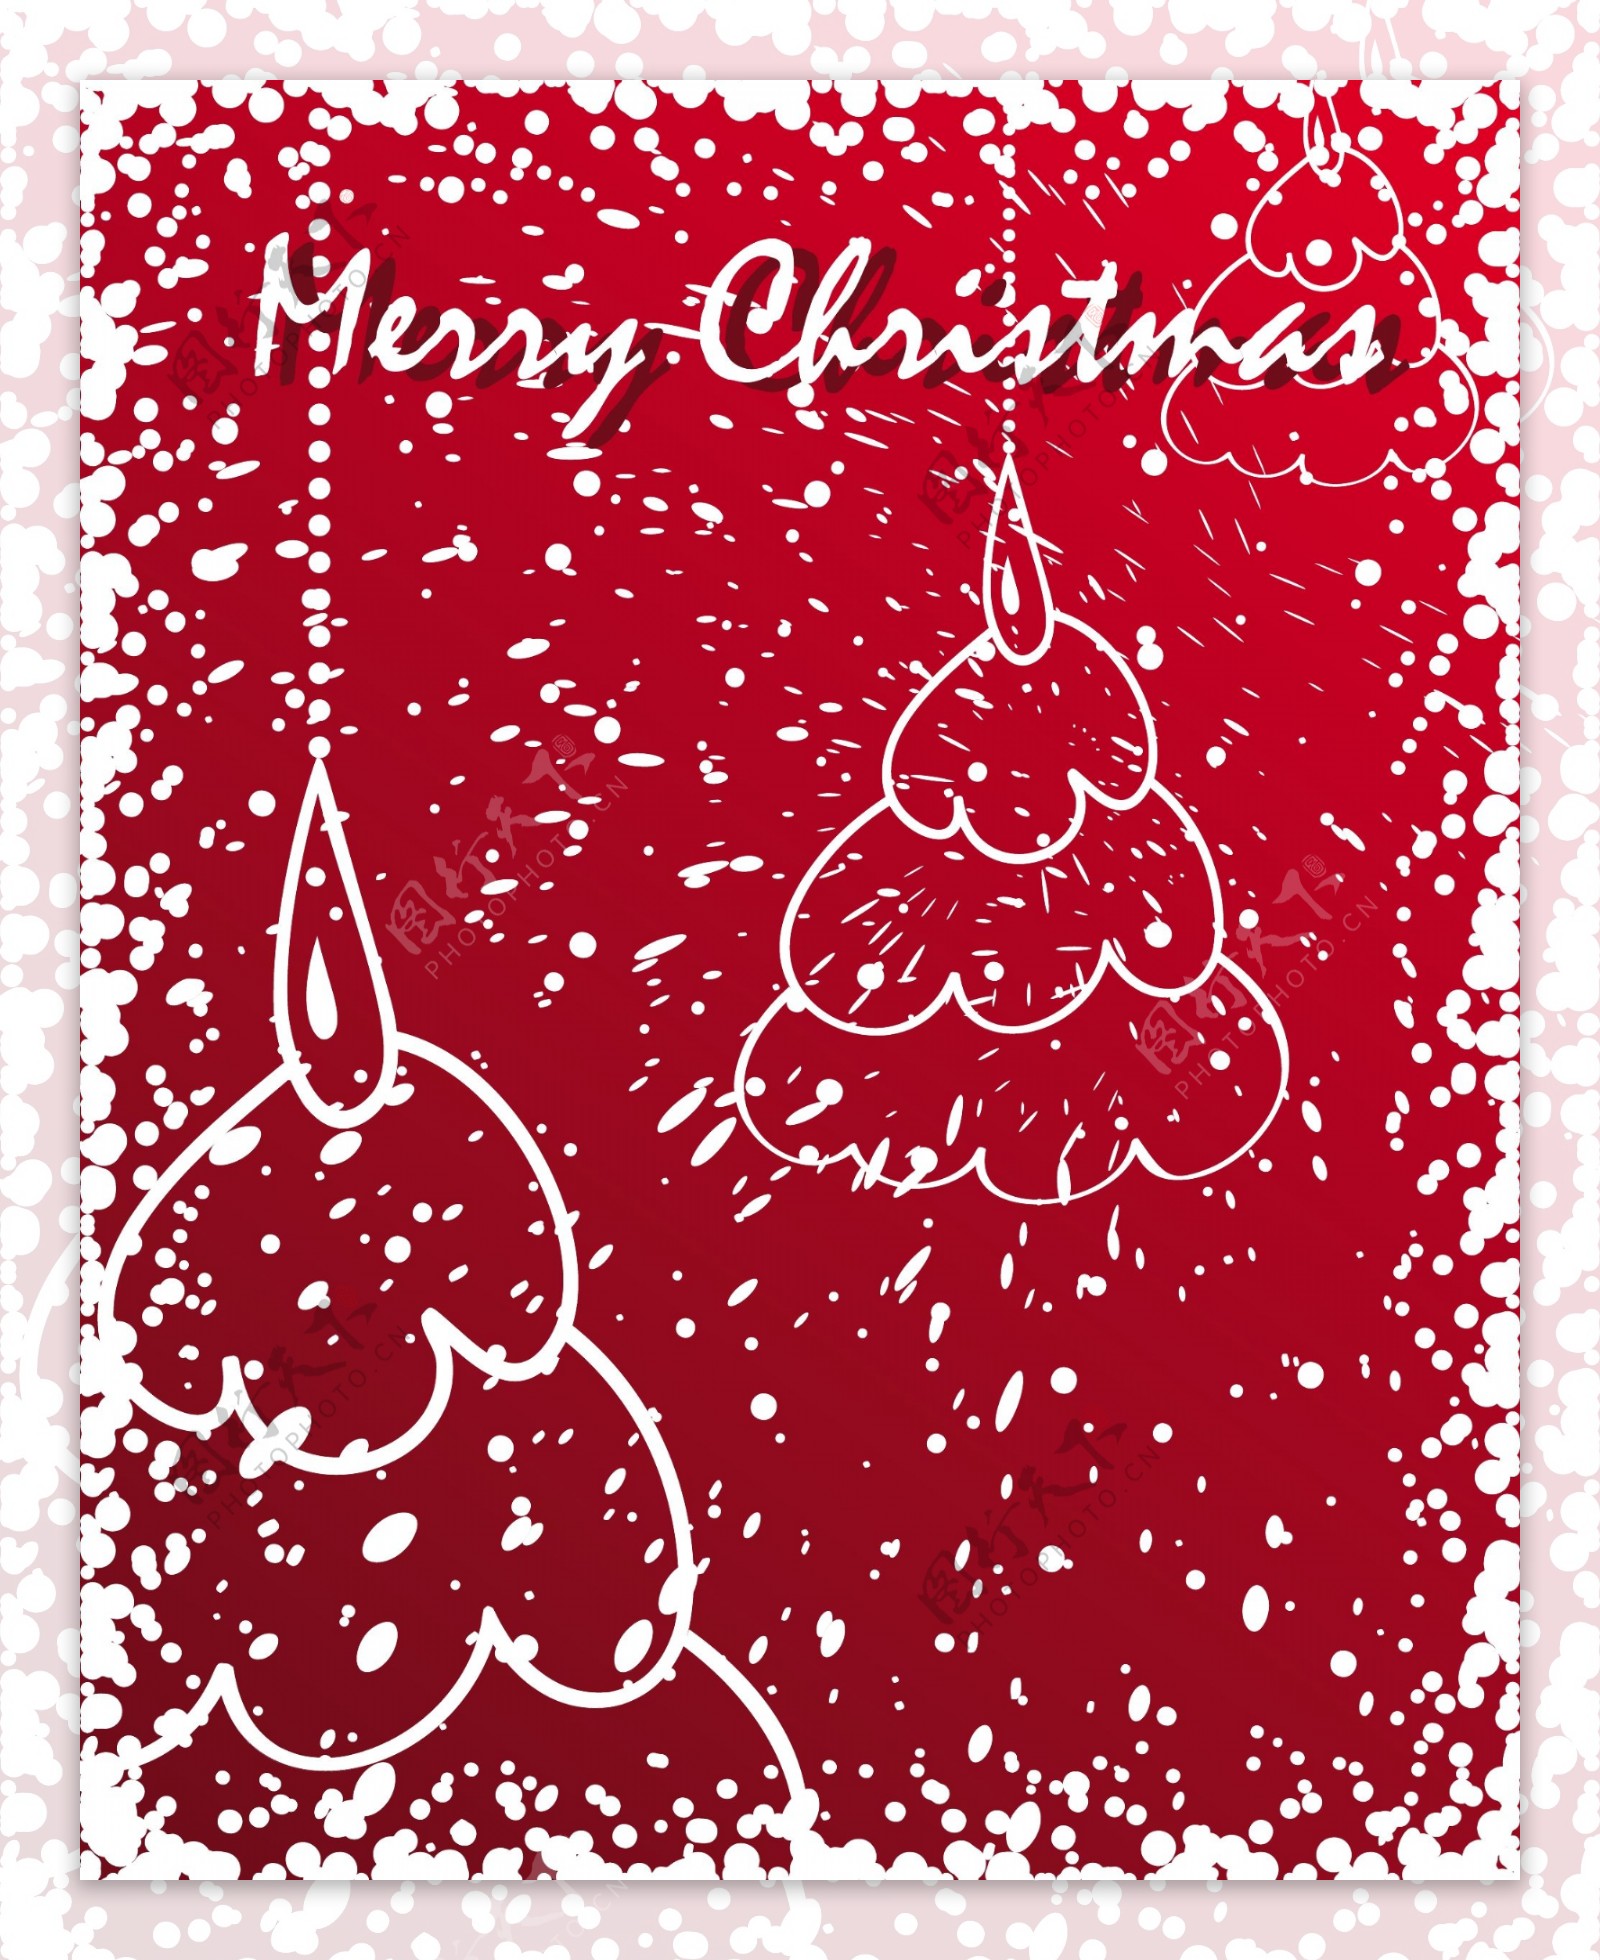 涂鸦风格雪中圣诞树矢量图节日矢量图圣诞节矢量素材eps